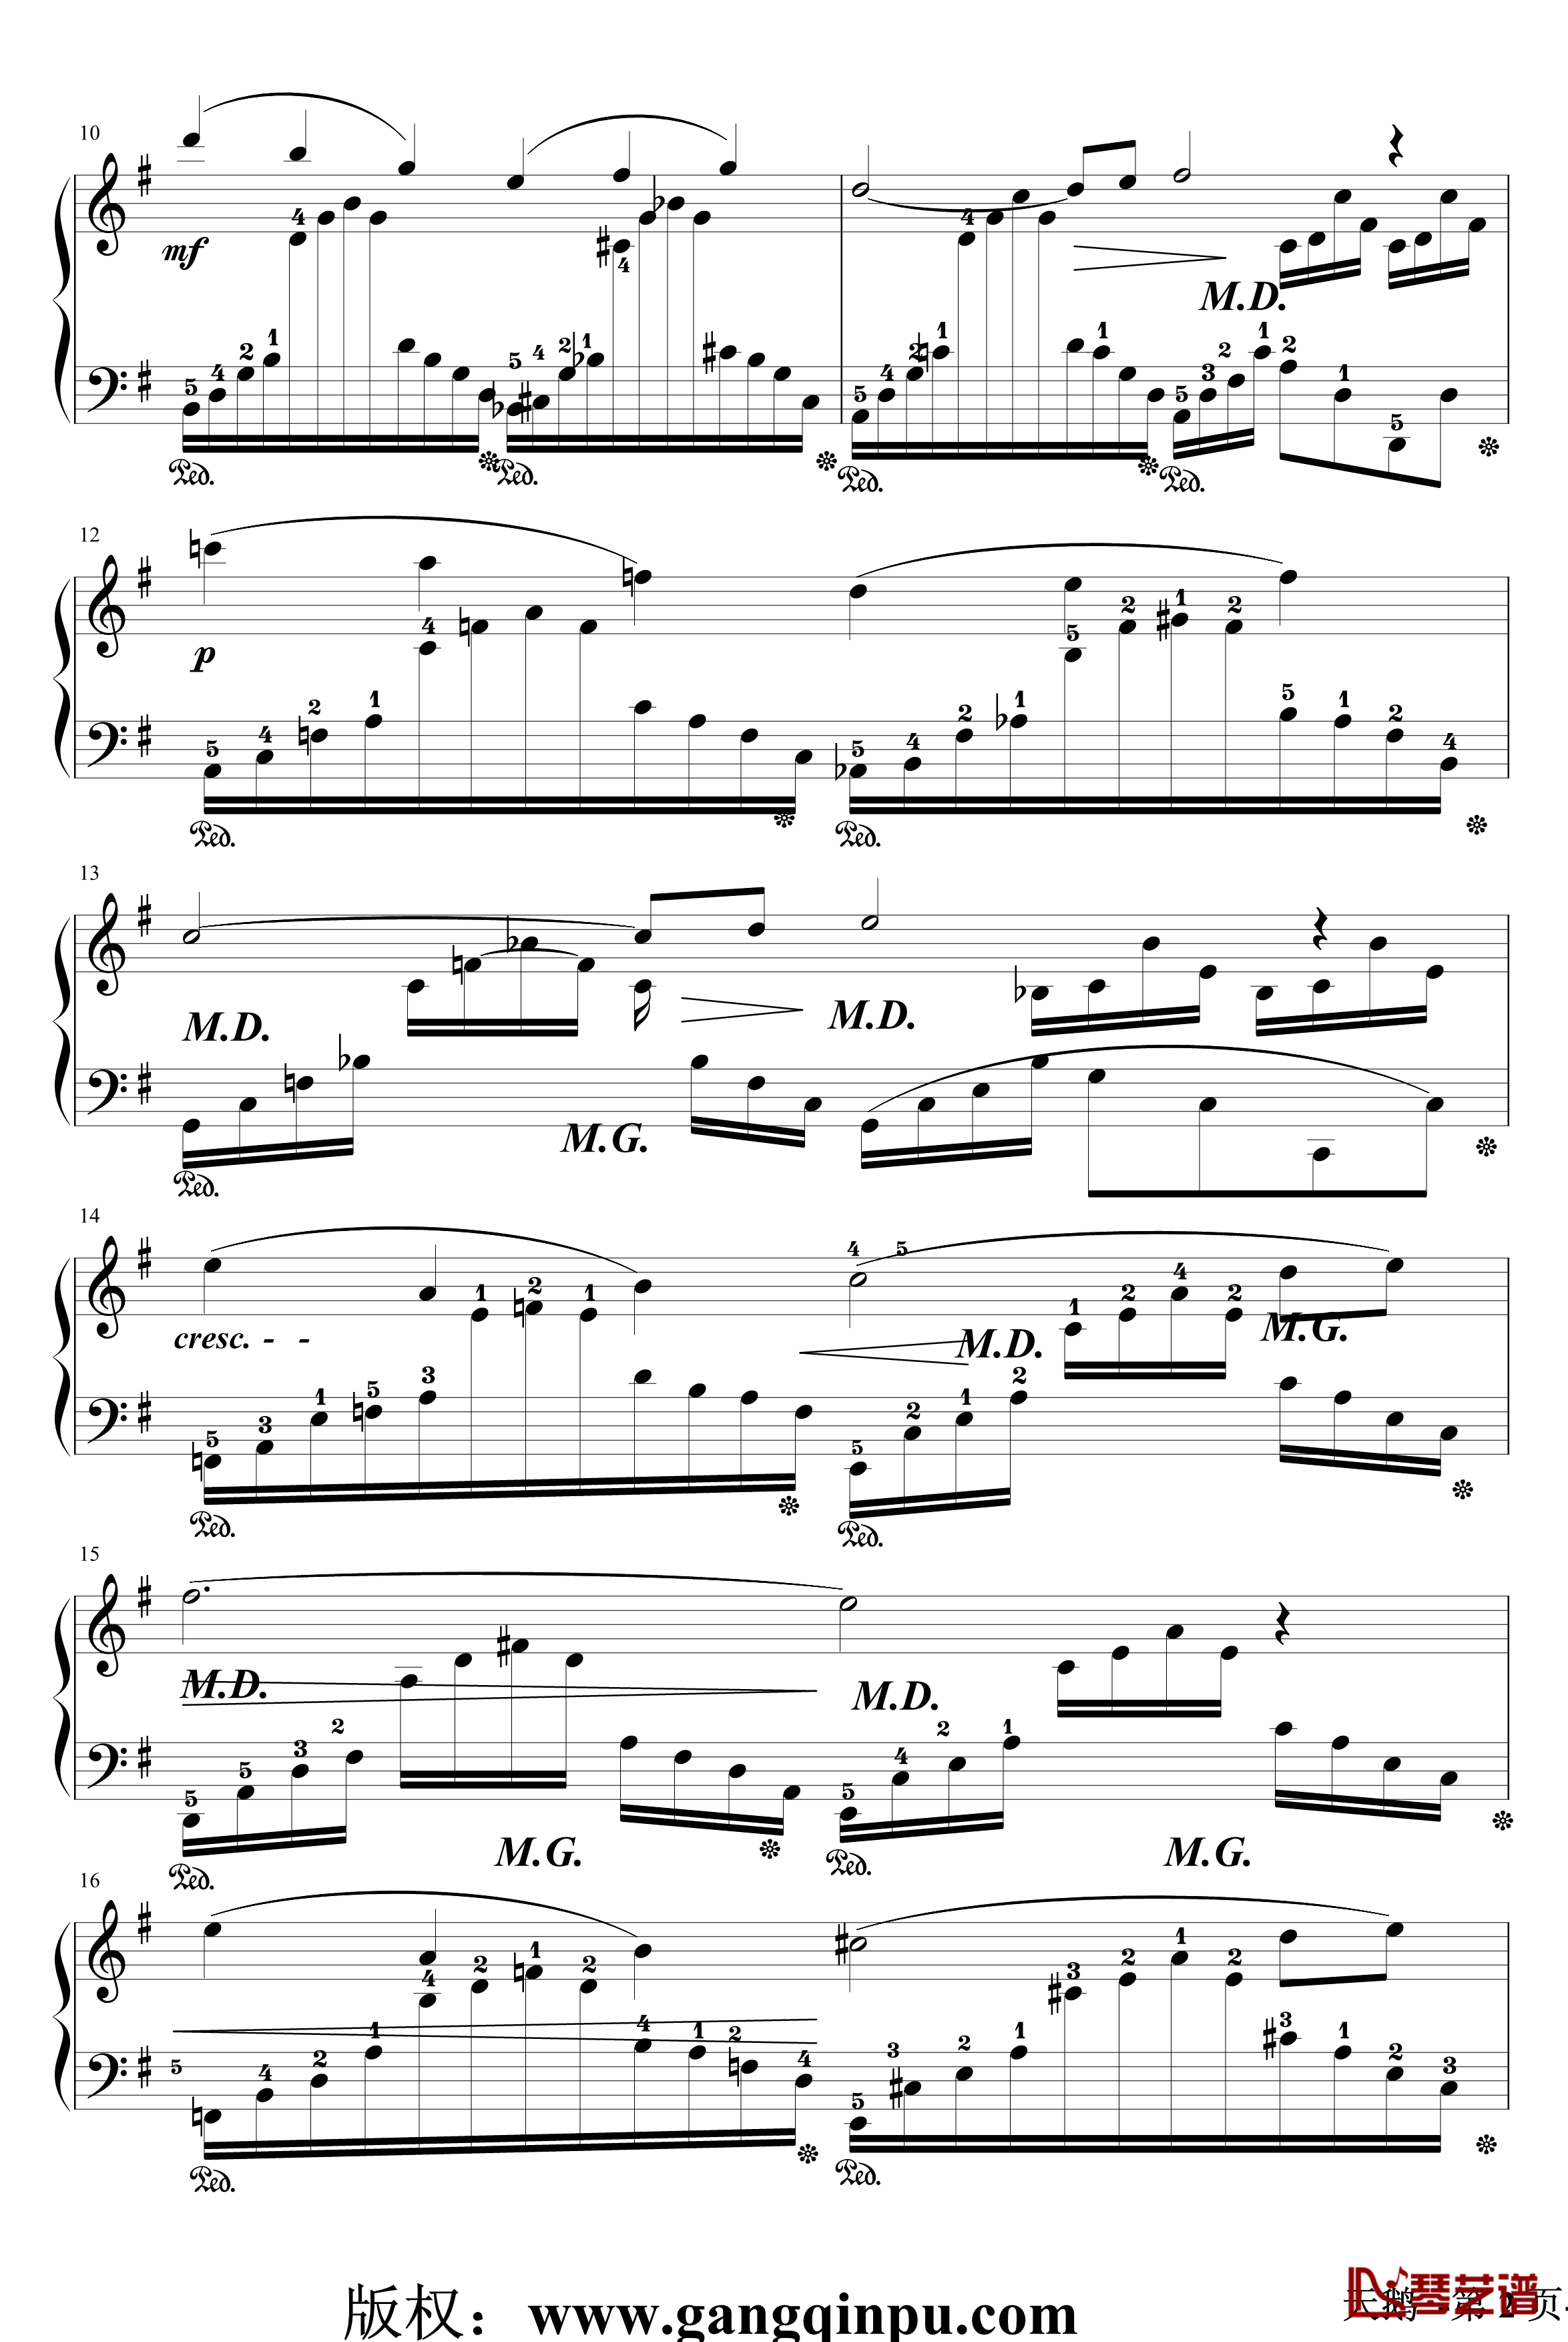 天鹅钢琴谱-带指法-圣桑2